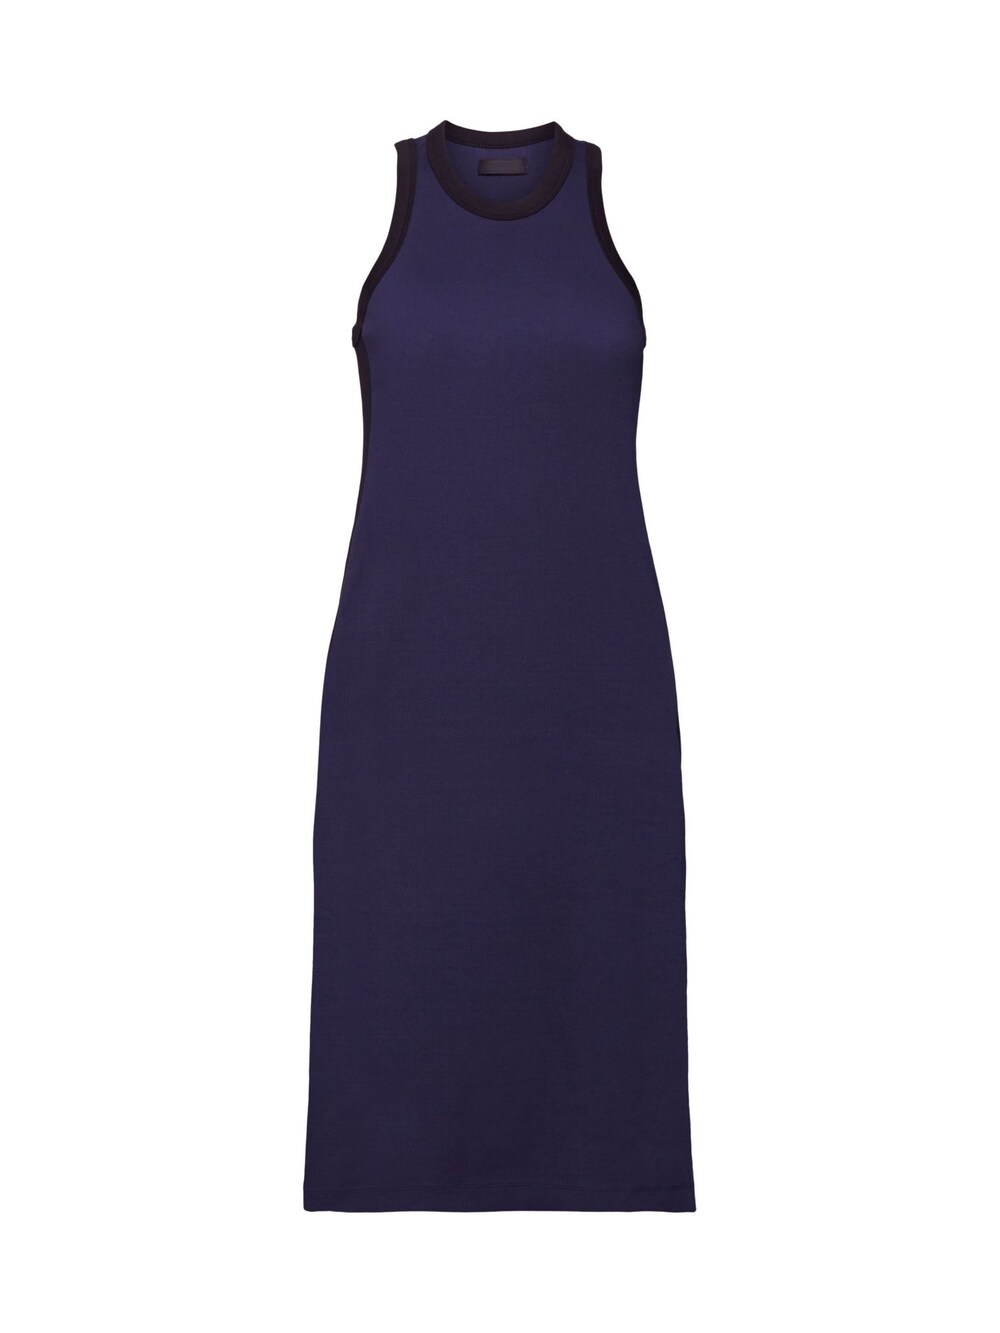 Вязанное платье Esprit, темно-синий вязанное платье esprit синий